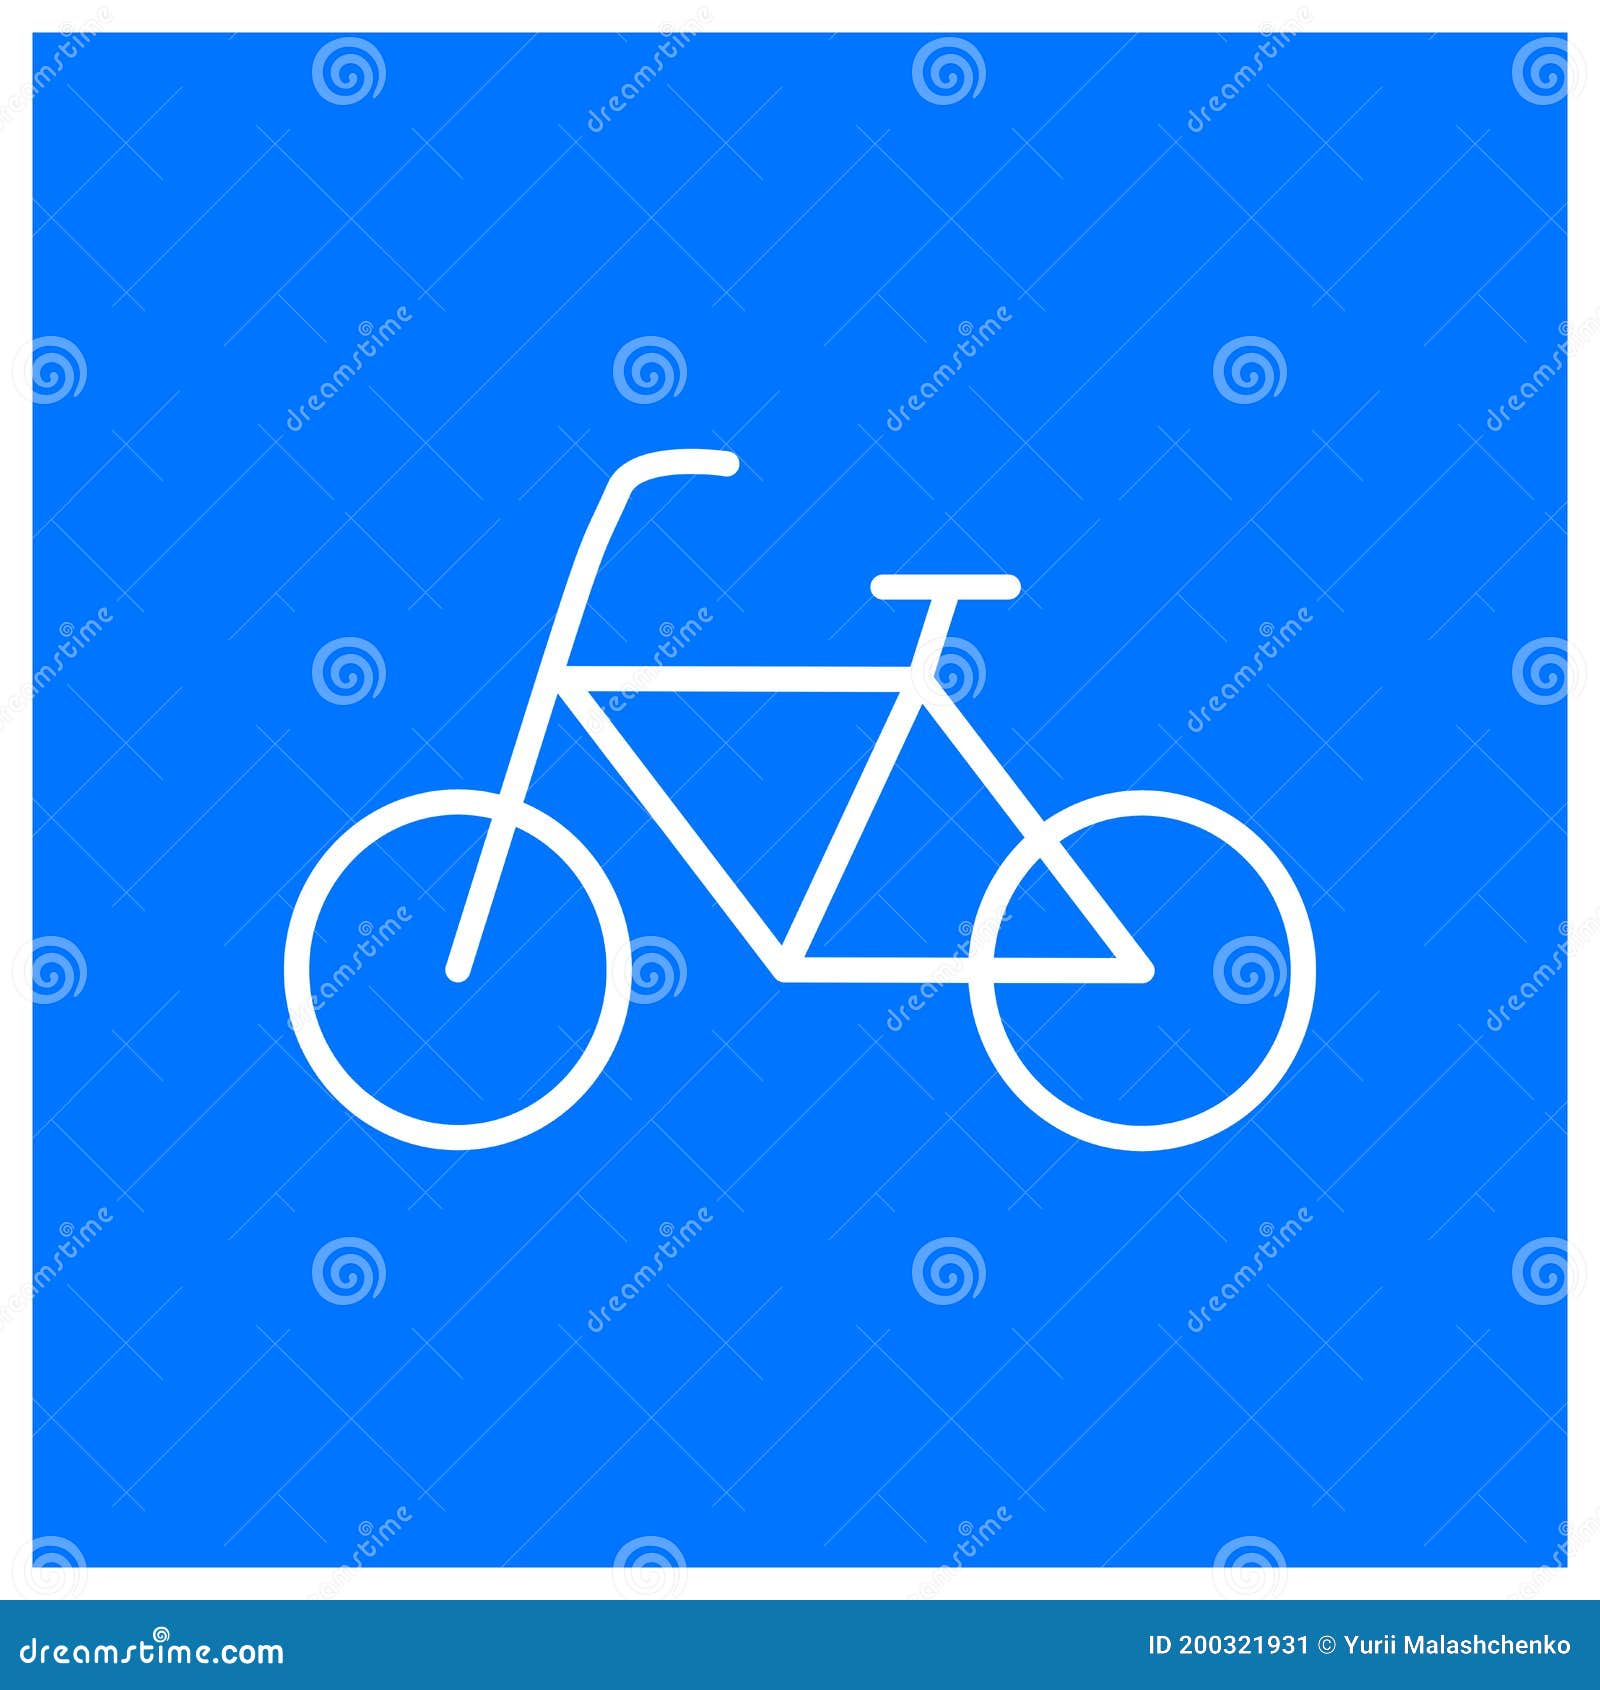 Thưởng thức hình ảnh đường xe đạp an toàn và tiện lợi hơn với biển báo đường xe đạp trên nền xanh. Họa tiết đơn giản và bắt mắt giúp bảo vệ người đi xe đạp và đồng thời xây dựng nên một không gian đô thị xanh sạch tươi đầy cuốn hút.